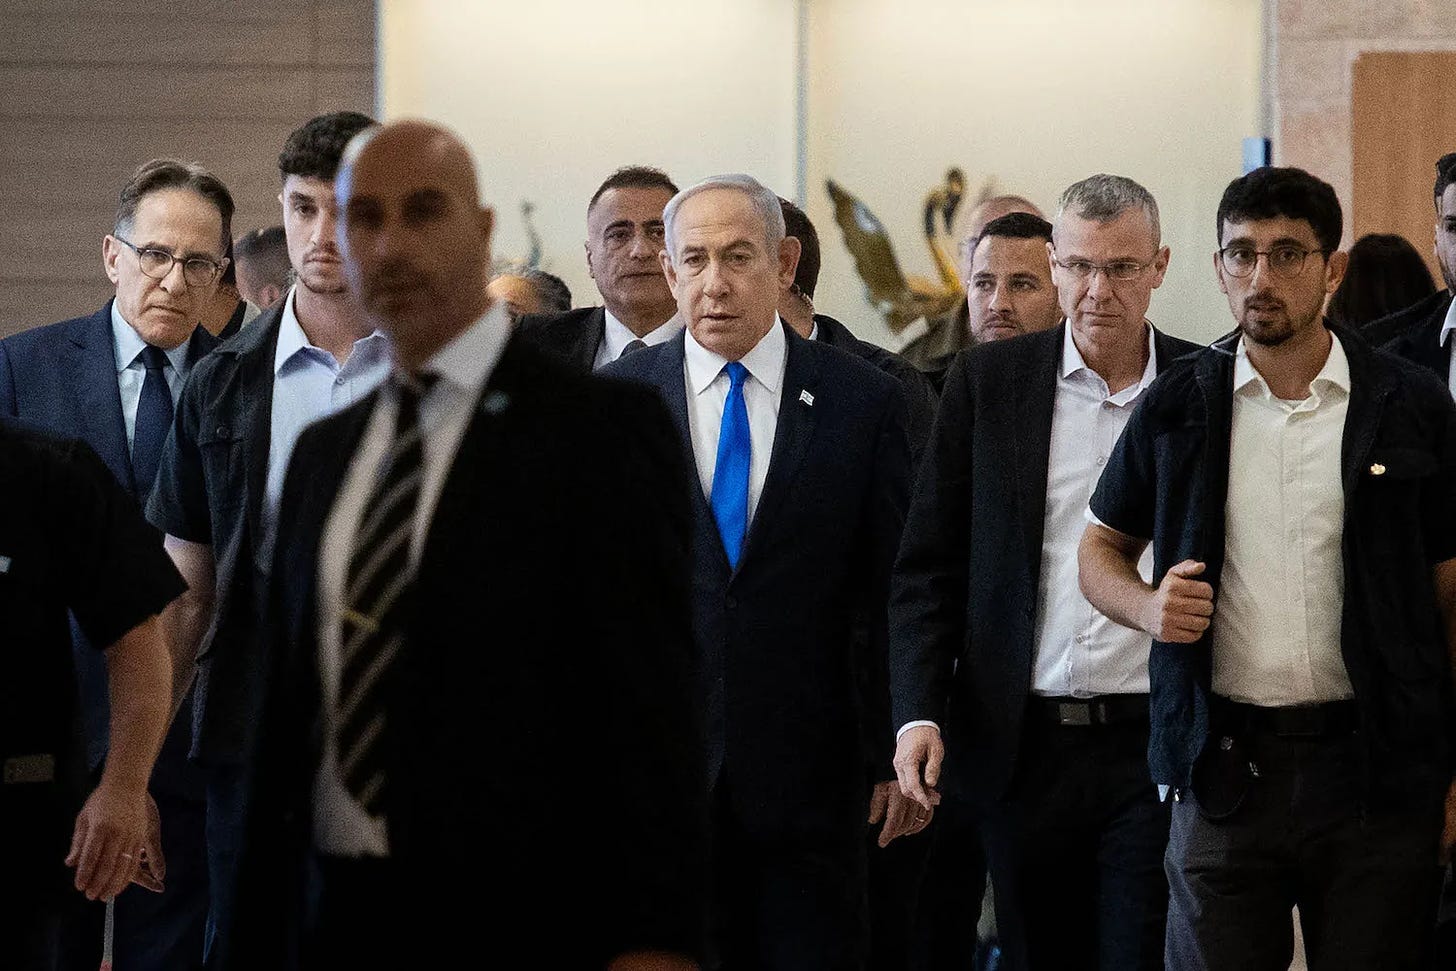 Israeli Prime Minister Benjamin Netanyahu arrives for a Knesset meeting in Jerusalem.